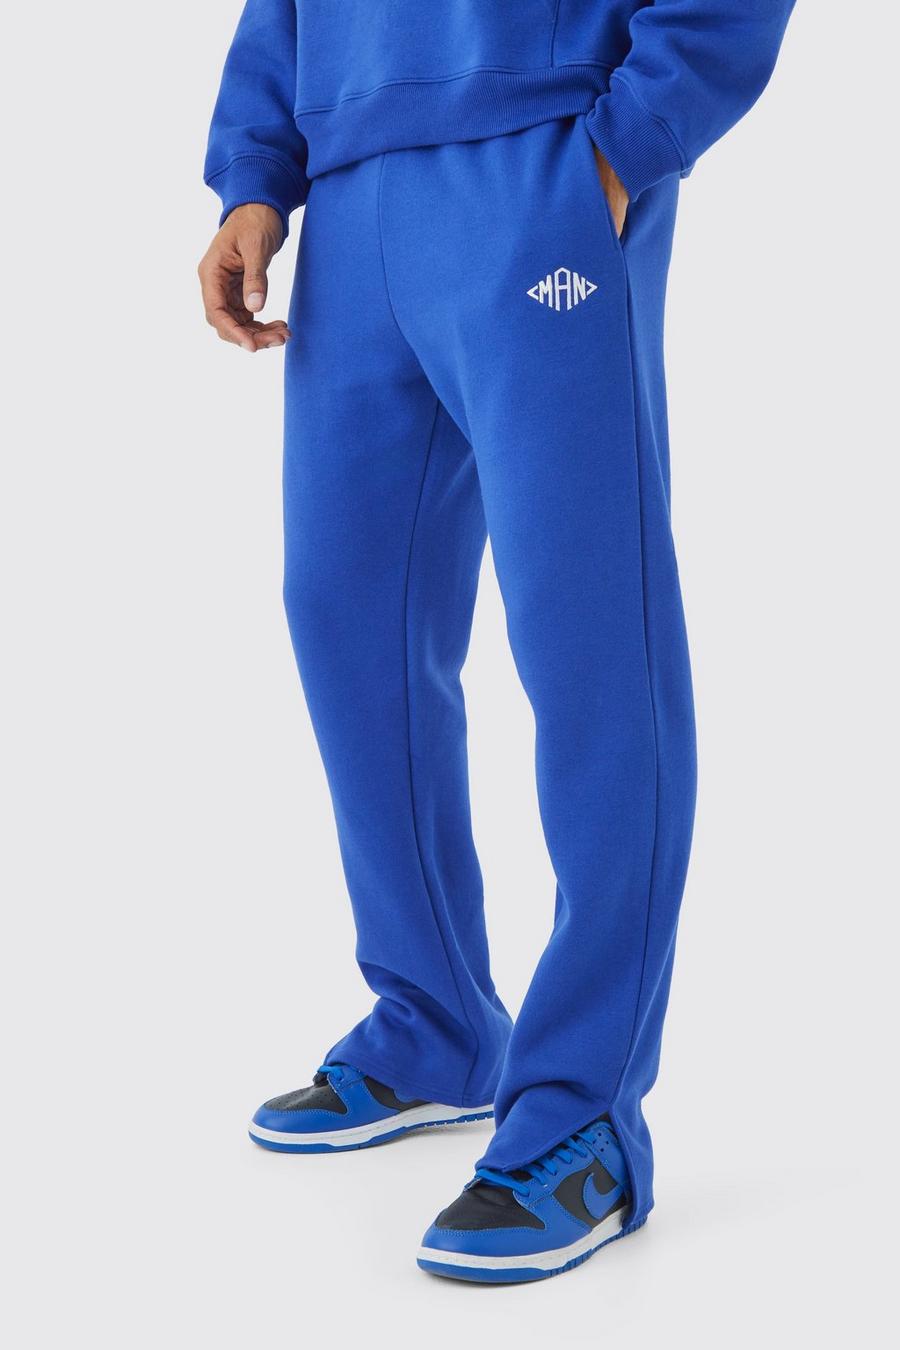 Pantalón deportivo MAN Regular con abertura en el bajo, Cobalt